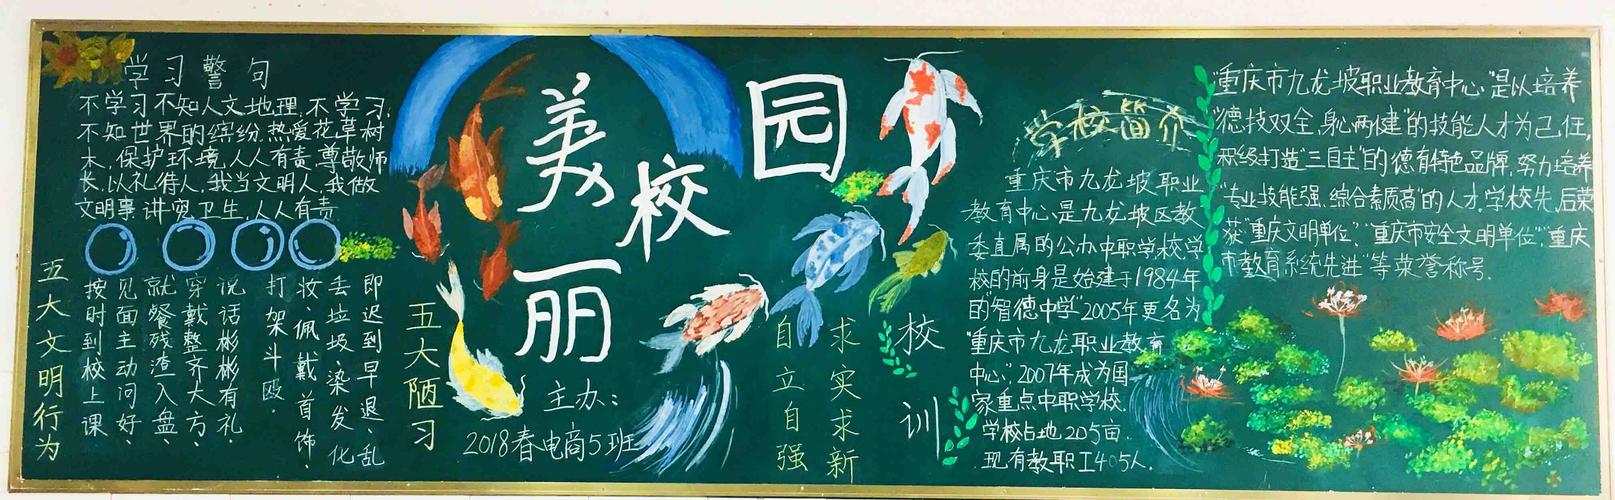 重庆市九龙坡职业教育中心 美丽校园第一波 | 多彩黑板报扮靓教室